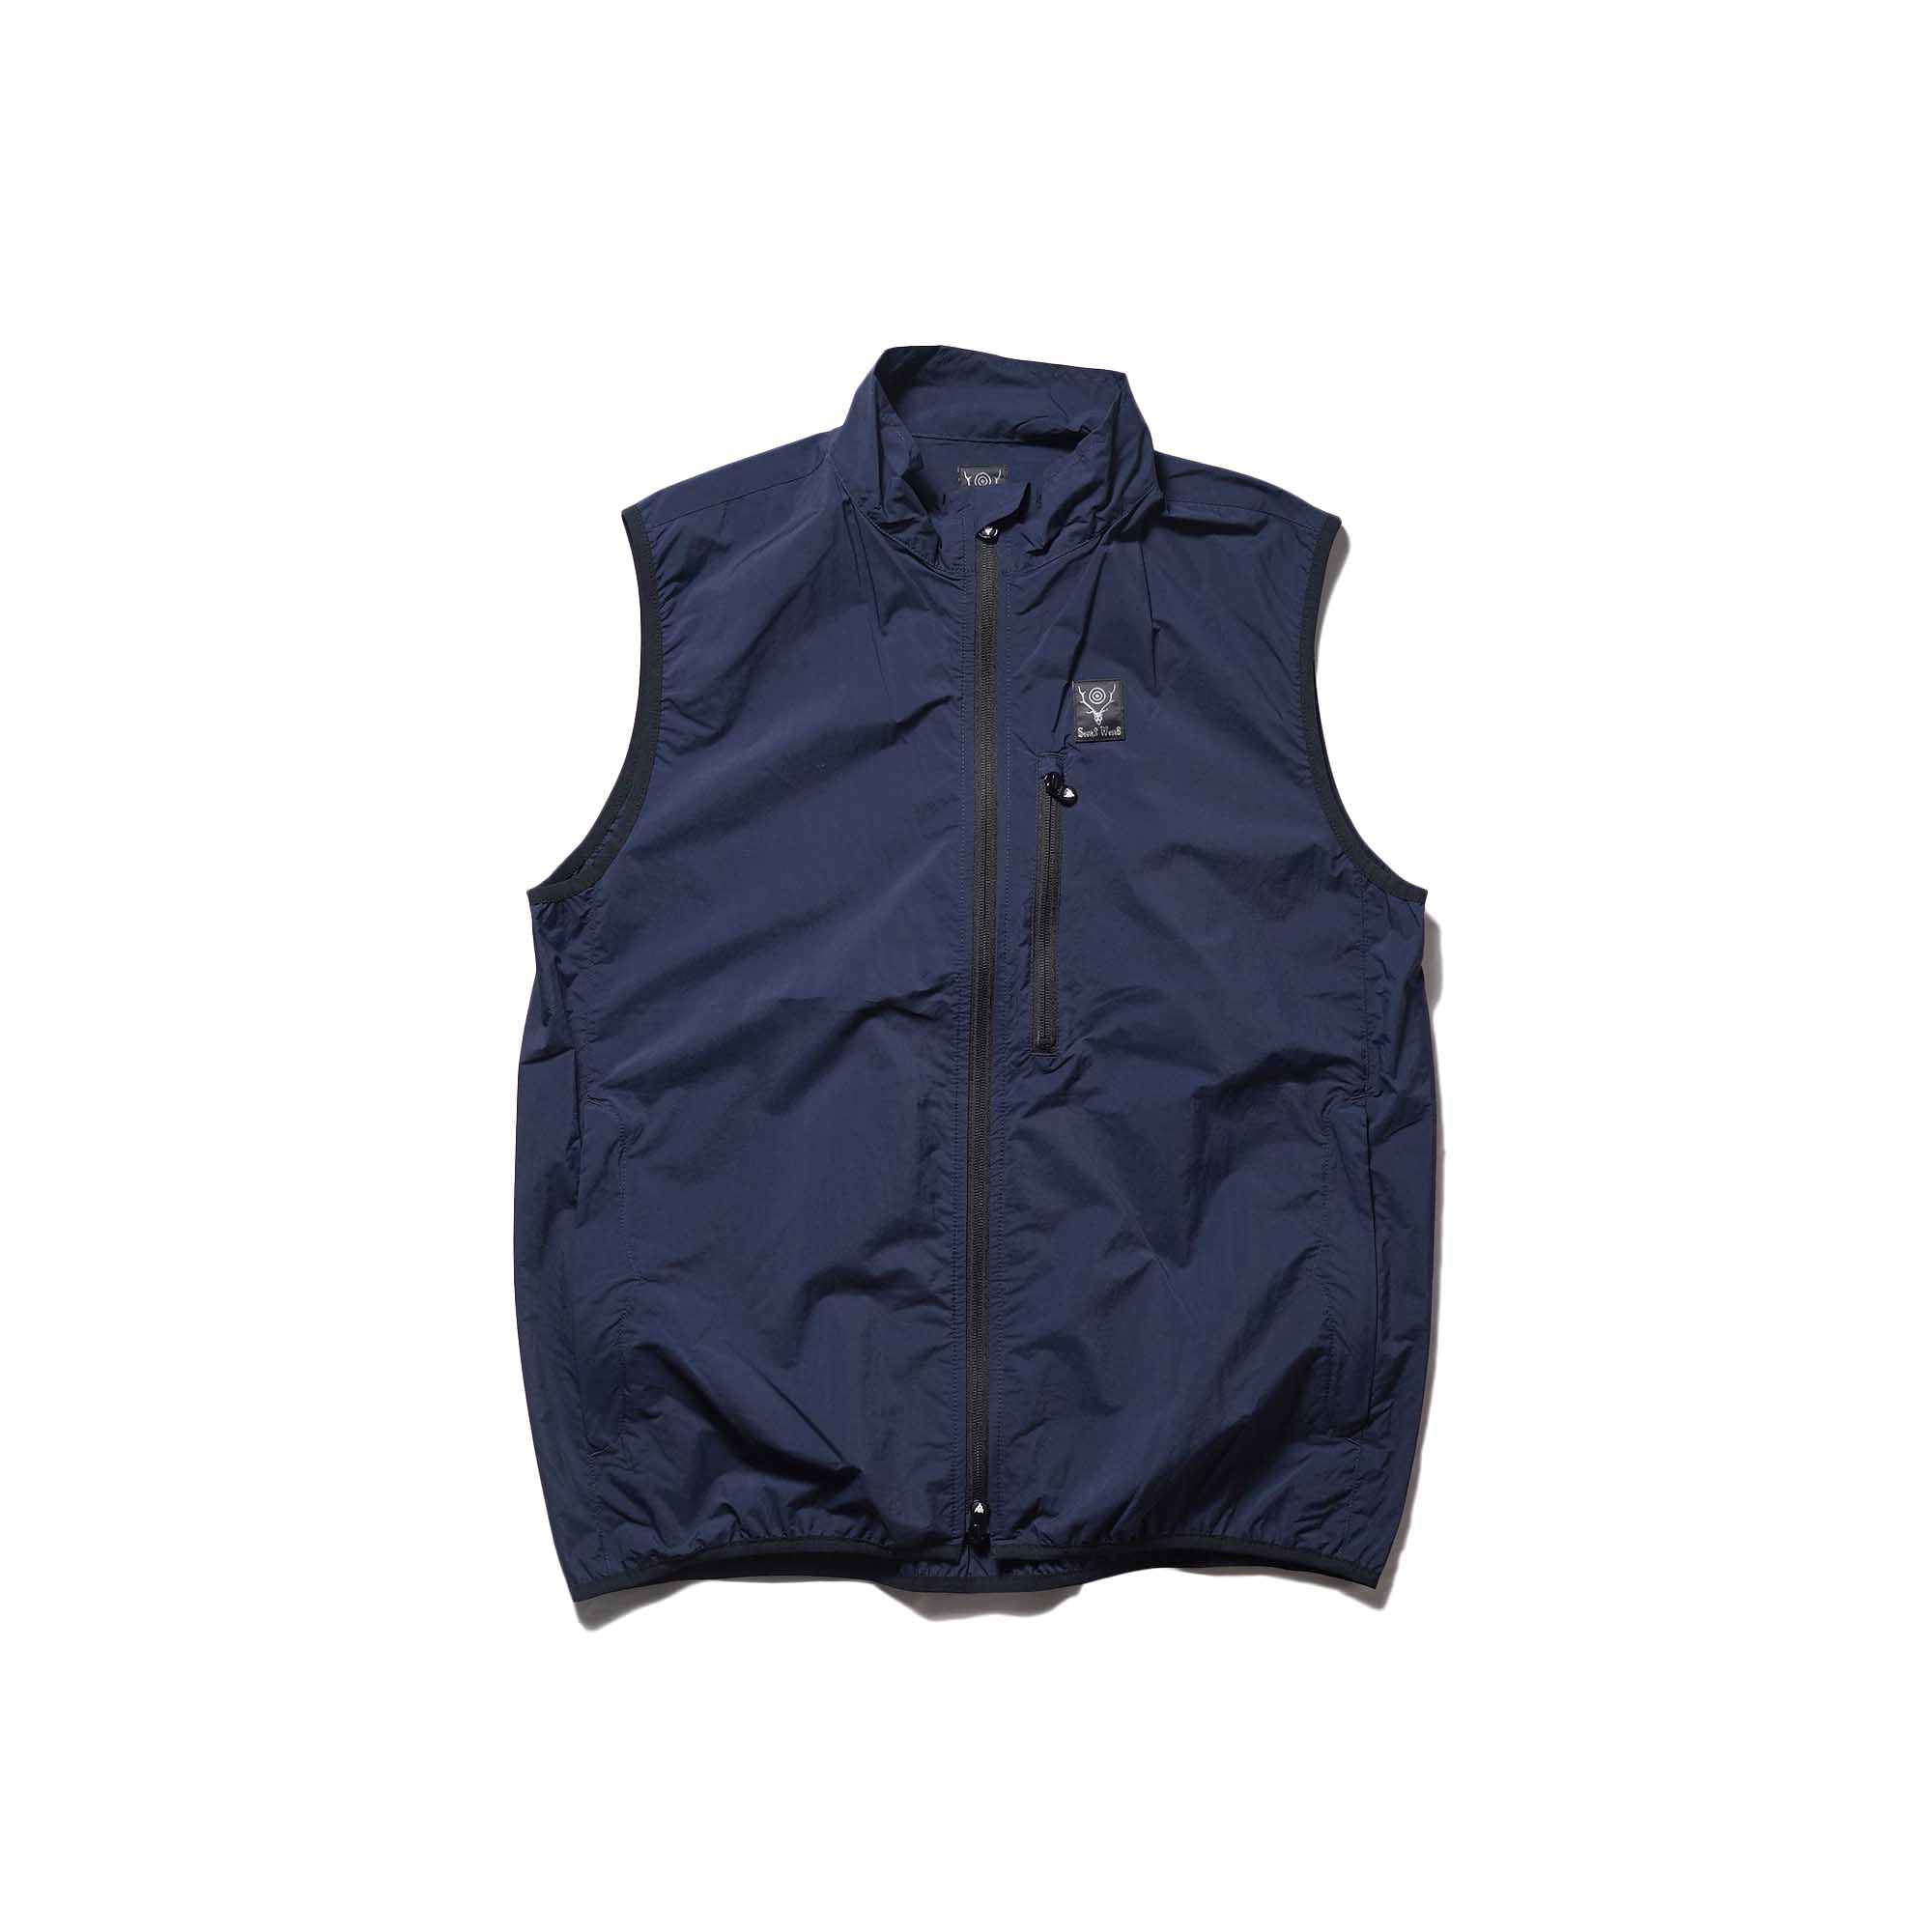 South2 West8 / Packable Vest (Navy)